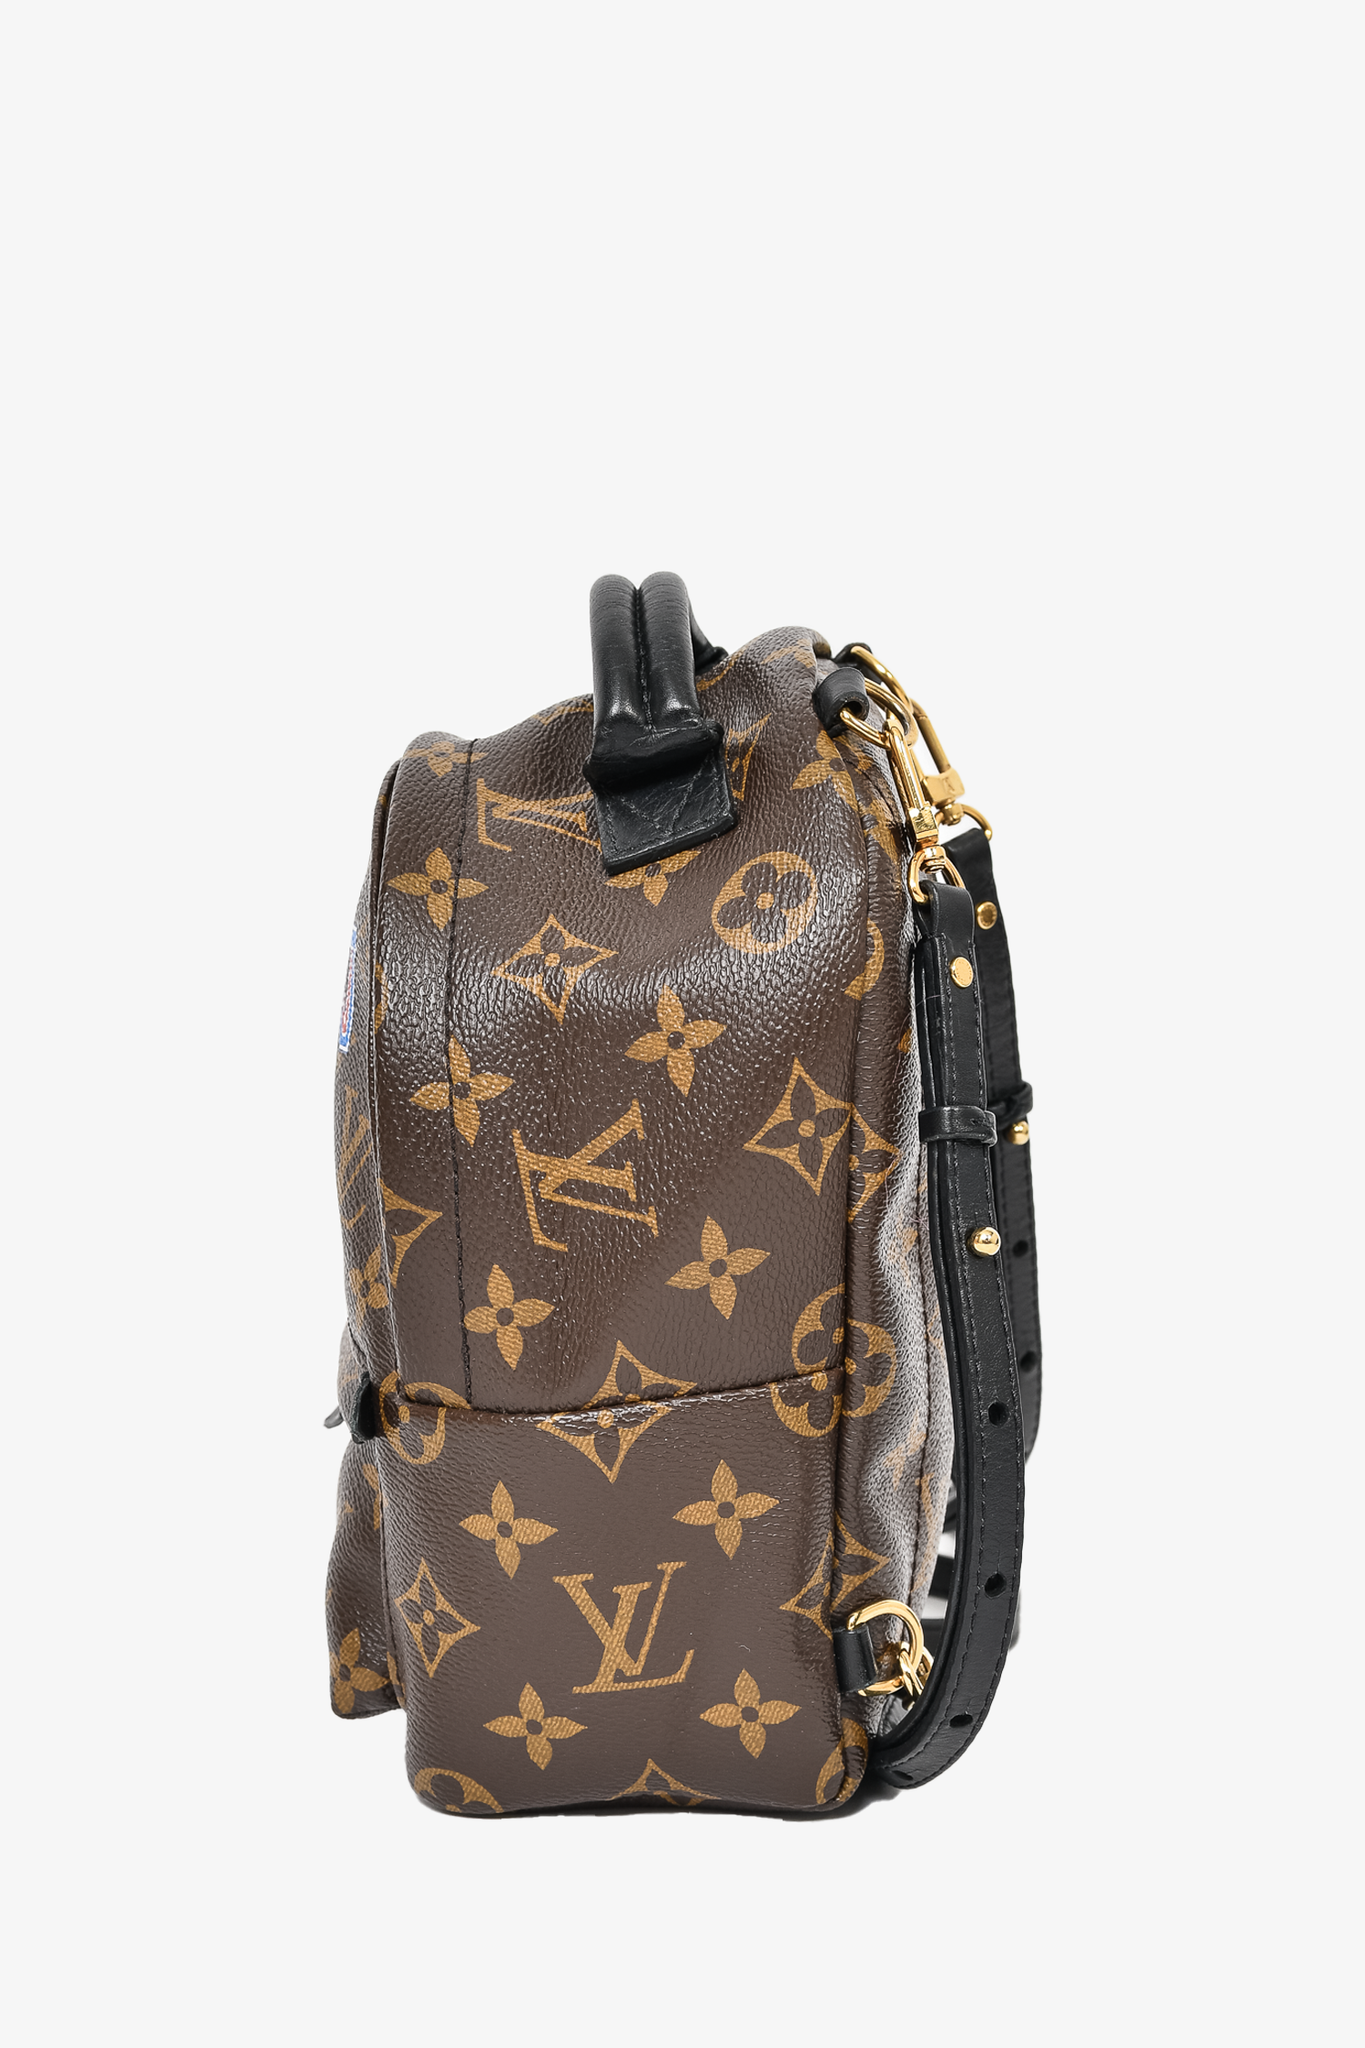 Louis Vuitton Handbag Unboxing 2020 - Victoire 